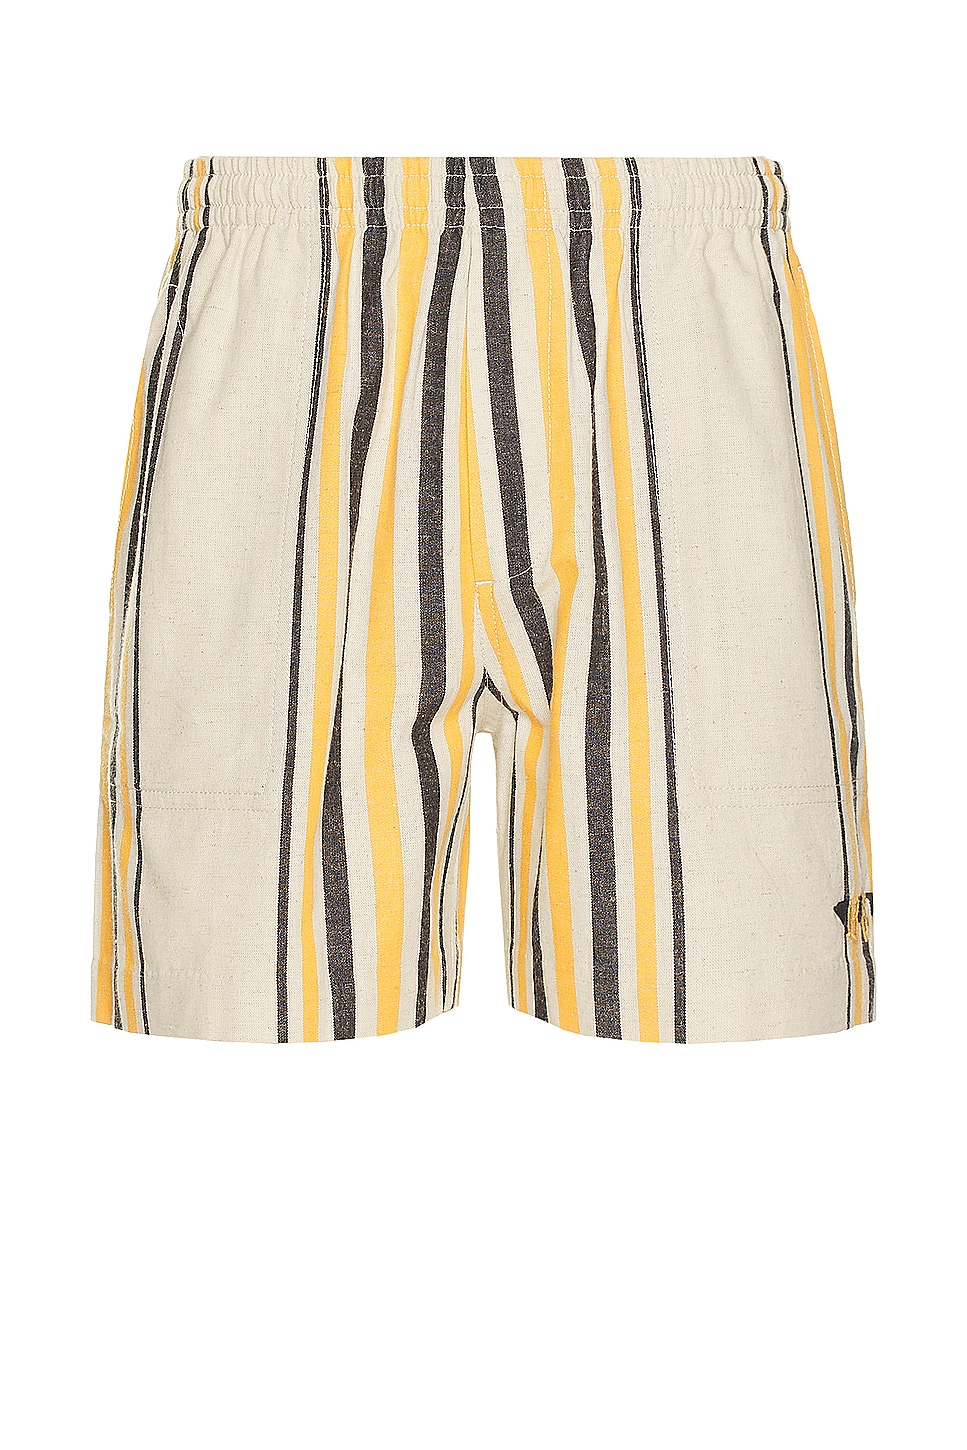 Image 1 of BODE Namesake Stripe Shorts in Ecru Multi